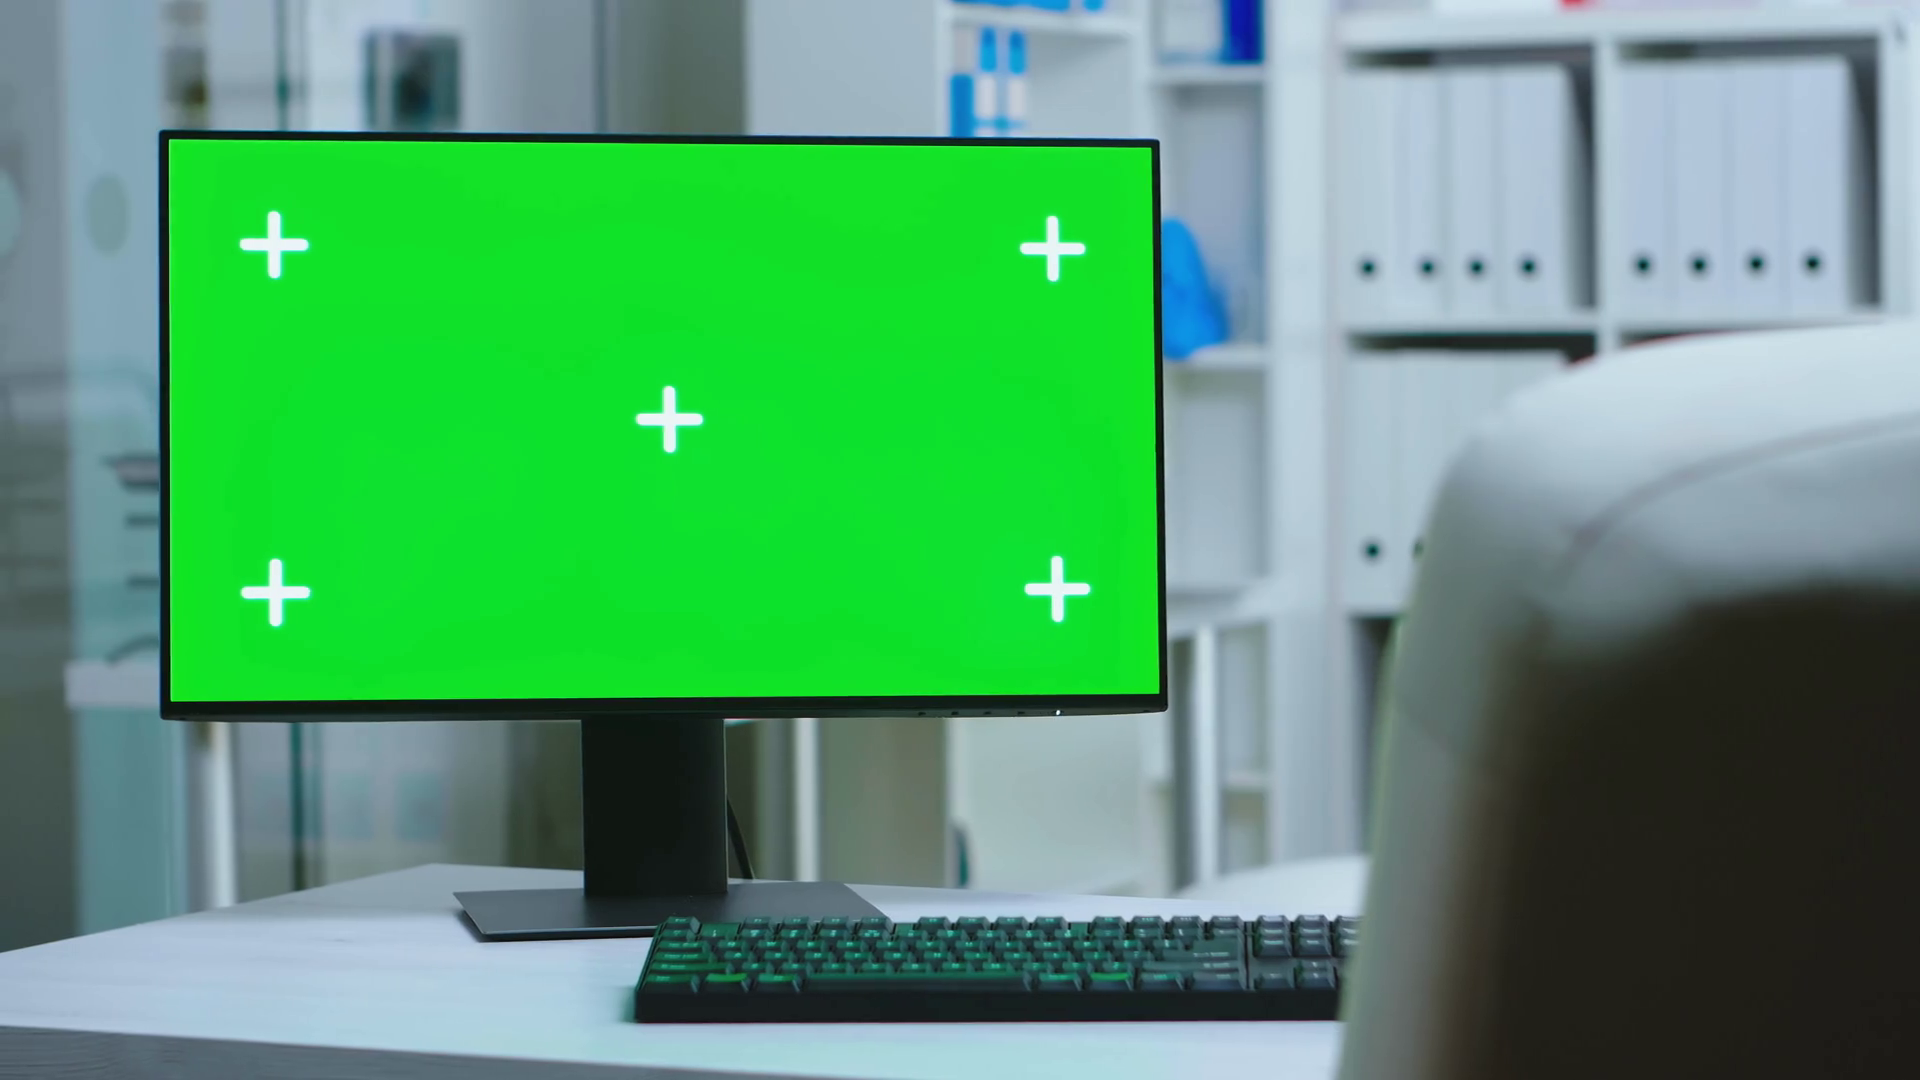 Màn hình xanh: Một chiếc màn hình xanh sẽ giúp bạn thưởng thức các bộ phim và video game một cách tuyệt vời hơn. Hãy đến với cửa hàng của chúng tôi để tìm kiếm chiếc màn hình xanh ưng ý nhất. Chúng tôi cam kết cung cấp cho bạn sản phẩm chất lượng và đa dạng giá cả để bạn có thể tìm cho mình chiếc màn hình tốt nhất.